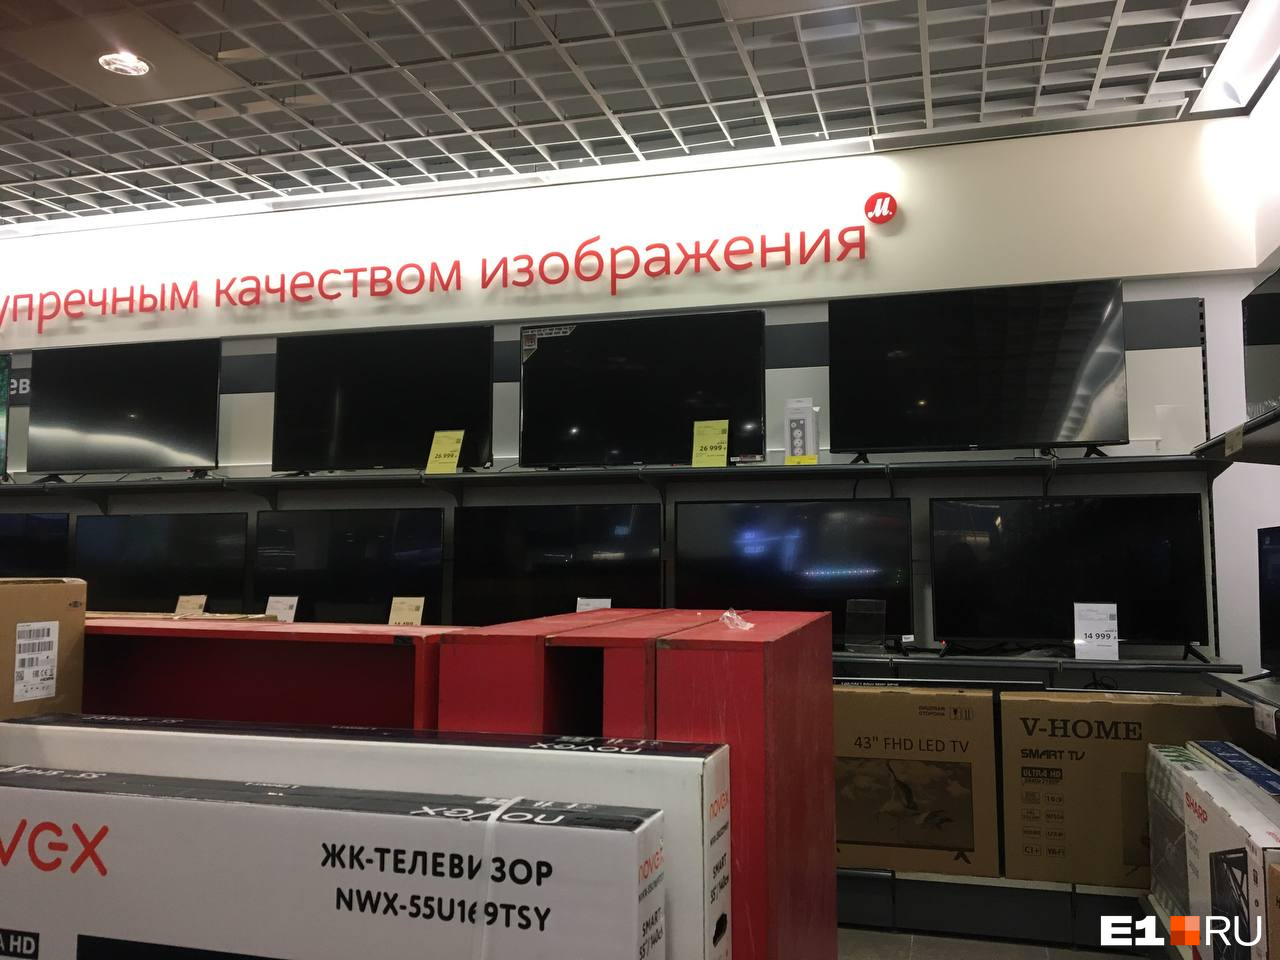 Экраны в магазинах больше не мерцают как раньше